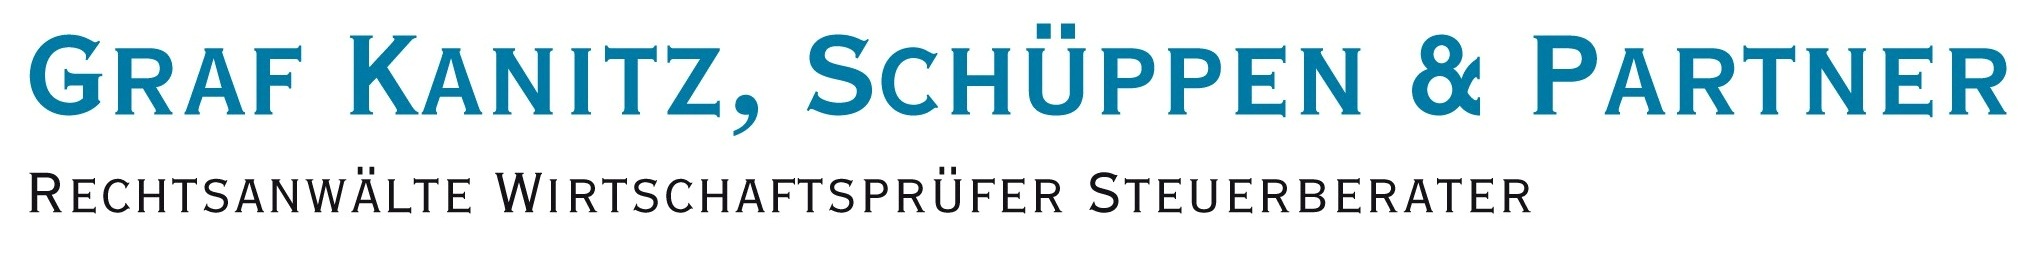 Logo Kanitz_Schueppen